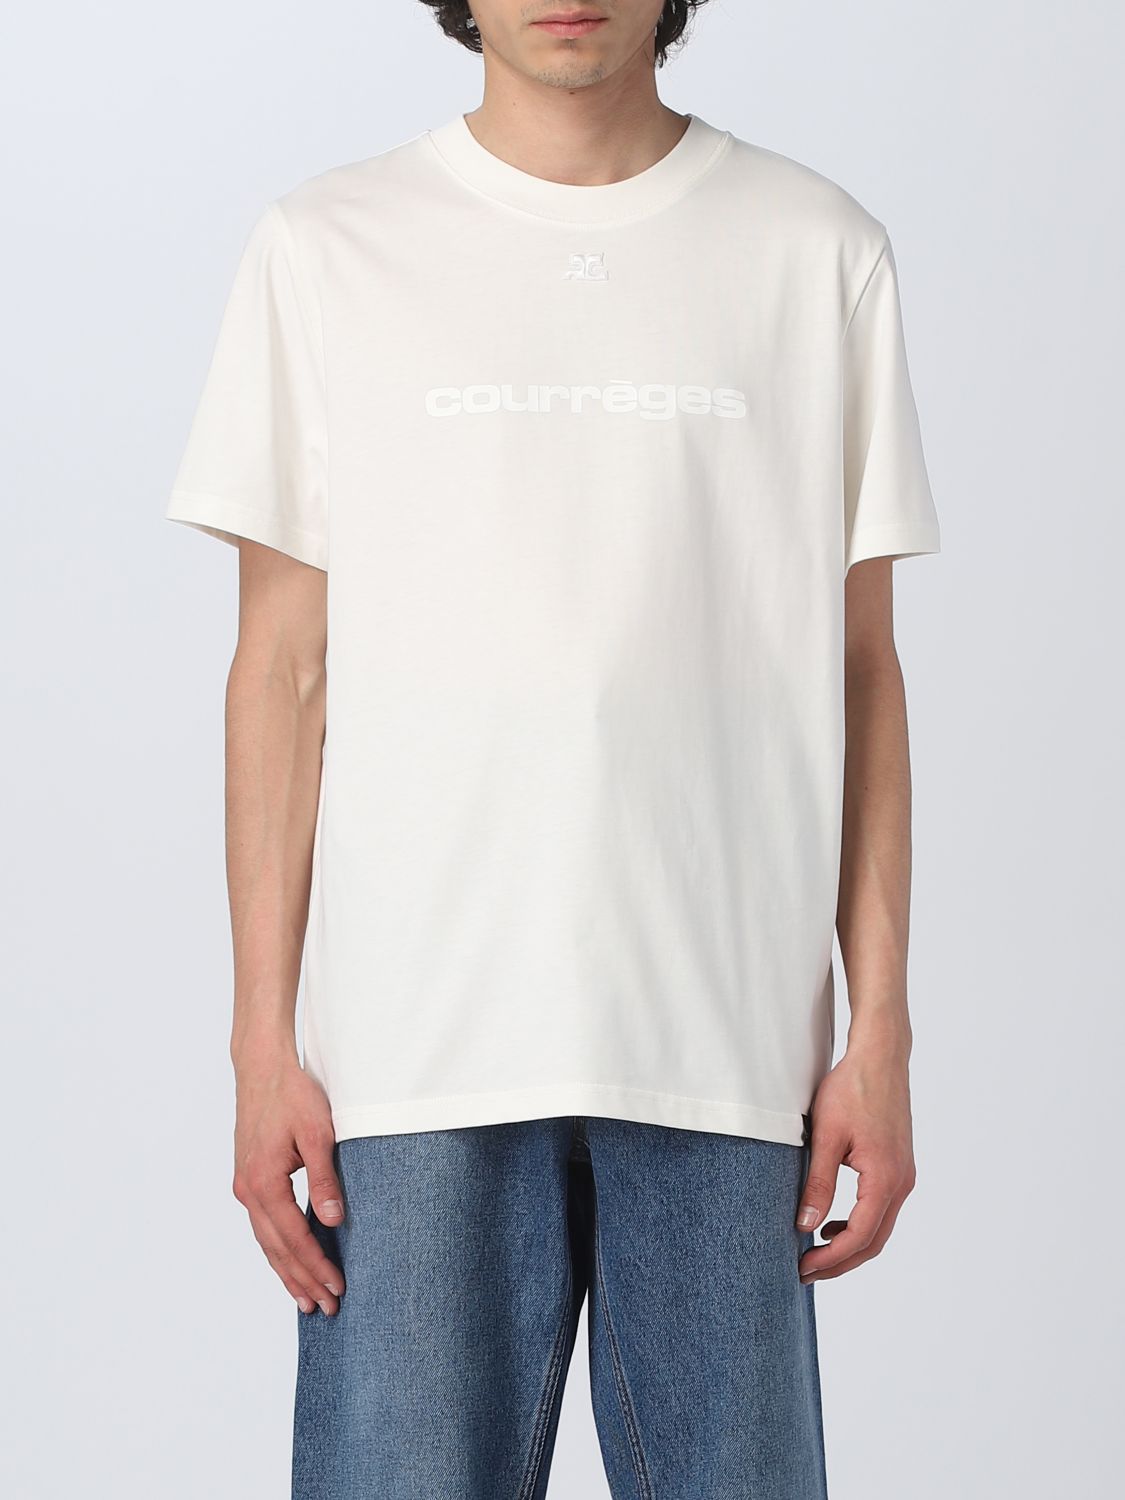 T-shirt Courrèges: T-shirt CourrÈges in cotone bianco 1